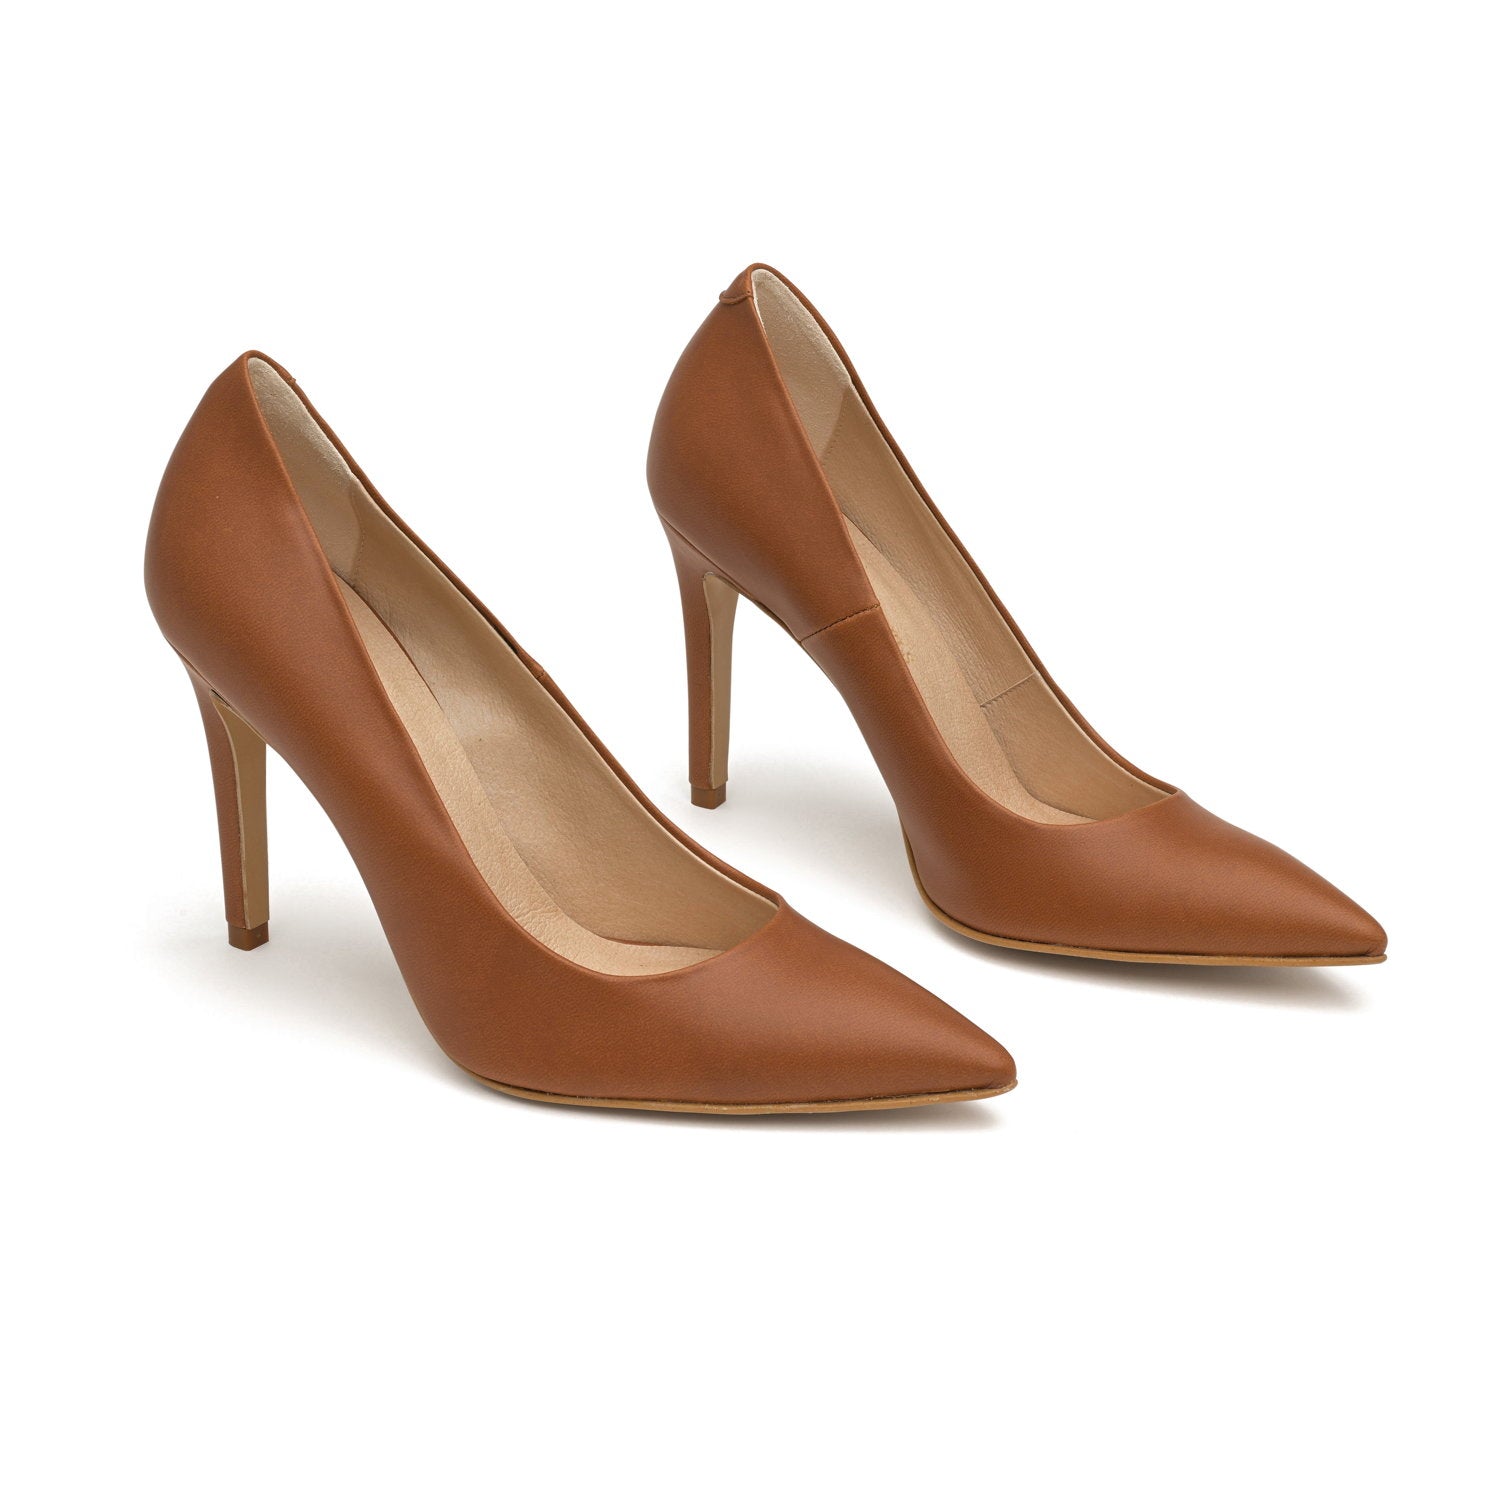 The Brown - vegan 100mm heels